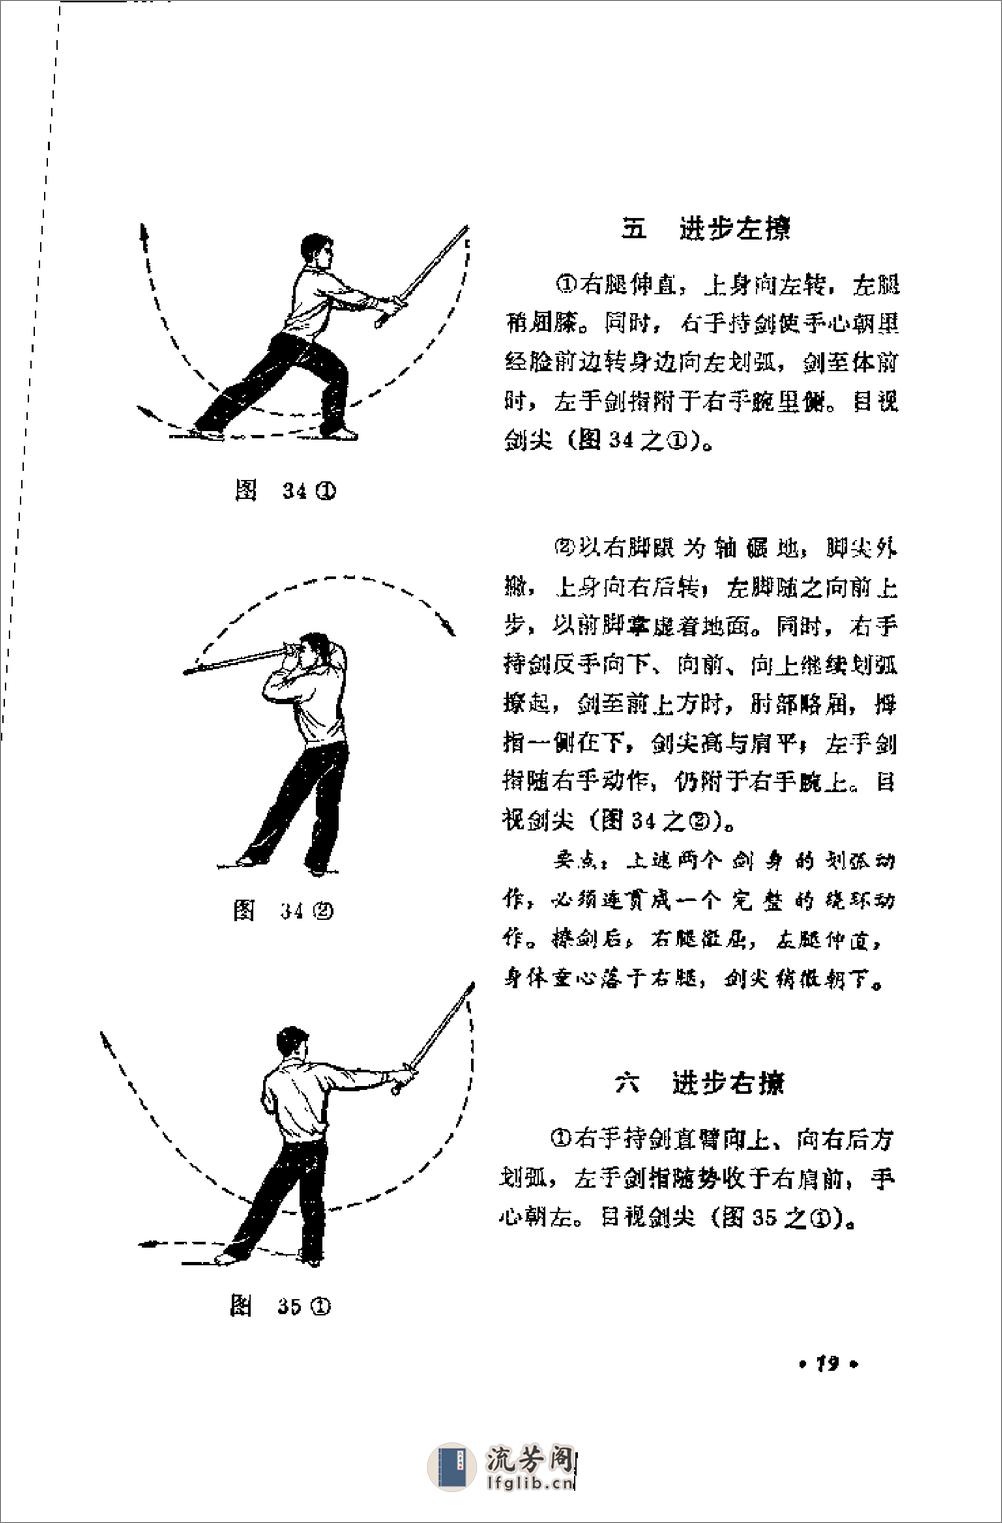 《初级剑术》中国人民共和国体育运动委员会运动司 - 第20页预览图